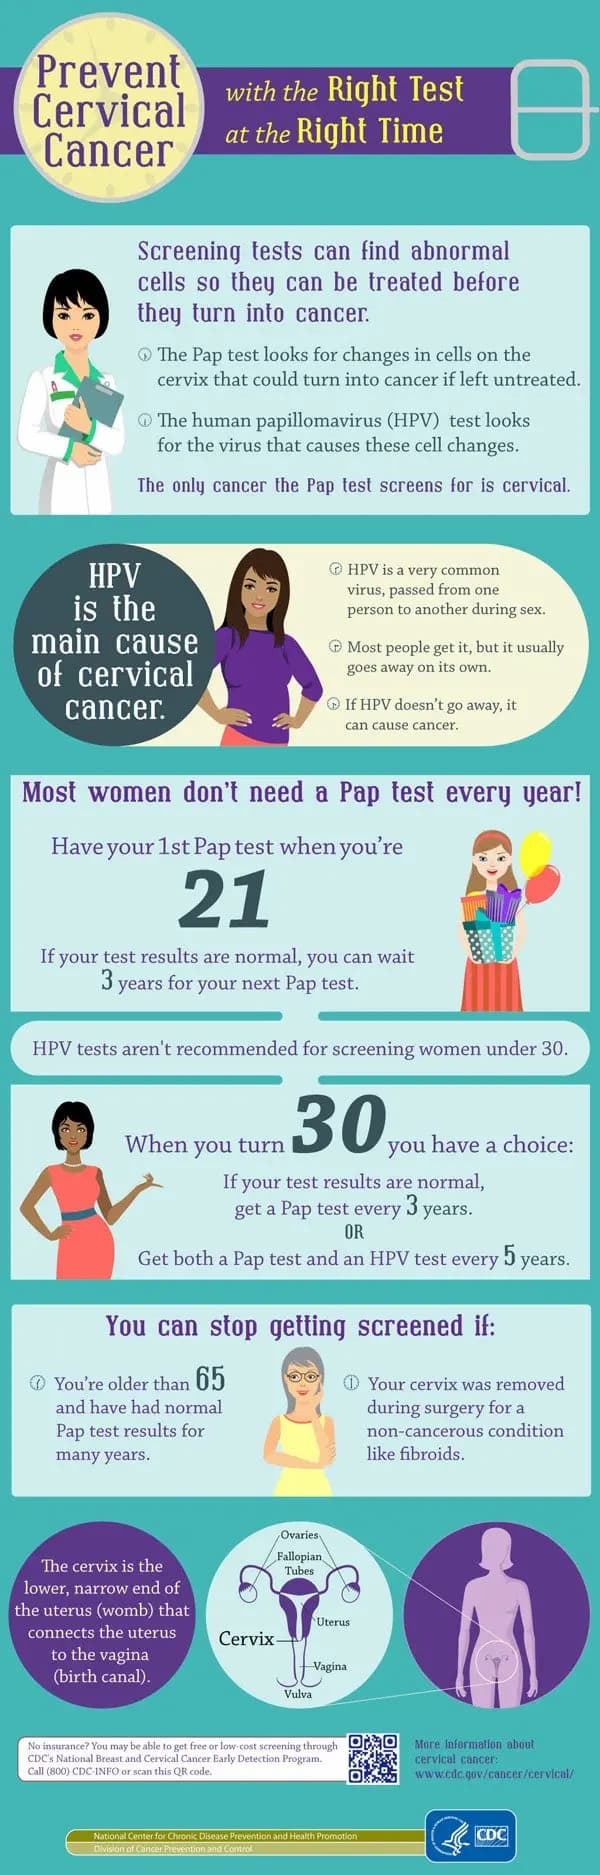 Steps for preventing cervical cancer